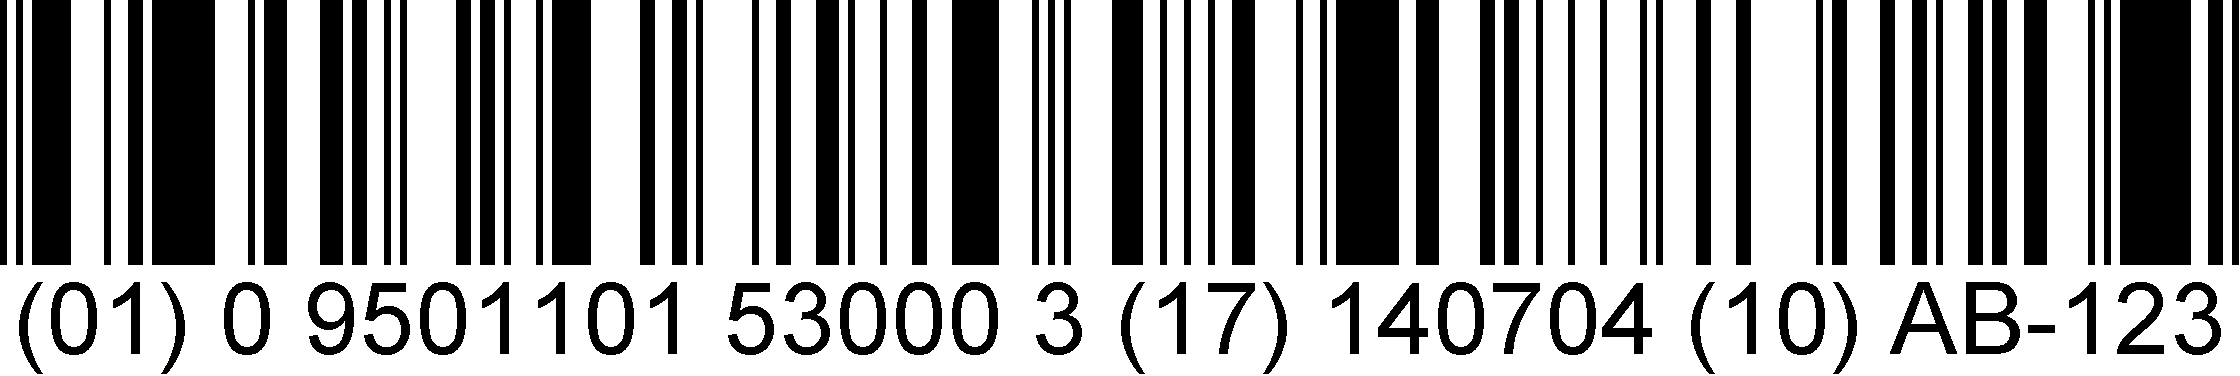 Gs1 Databar Barcodes Gs1 1484